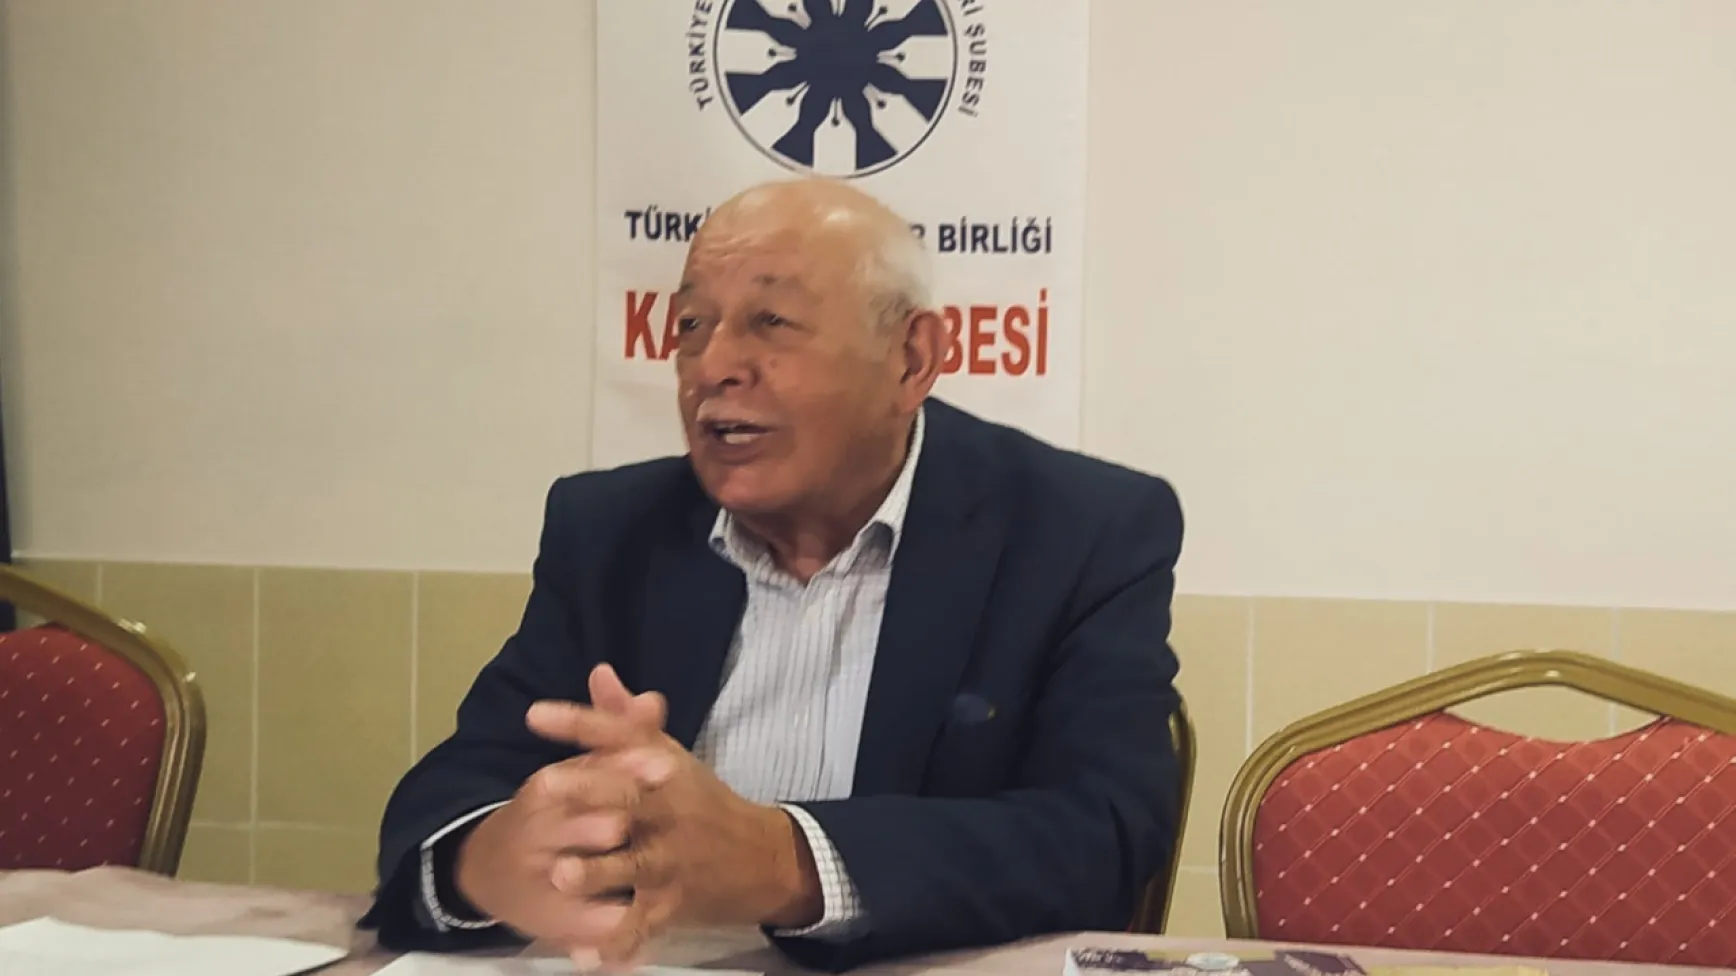 Tarihçi Erkiletlioğlu Kayseri Surlarını anlattı